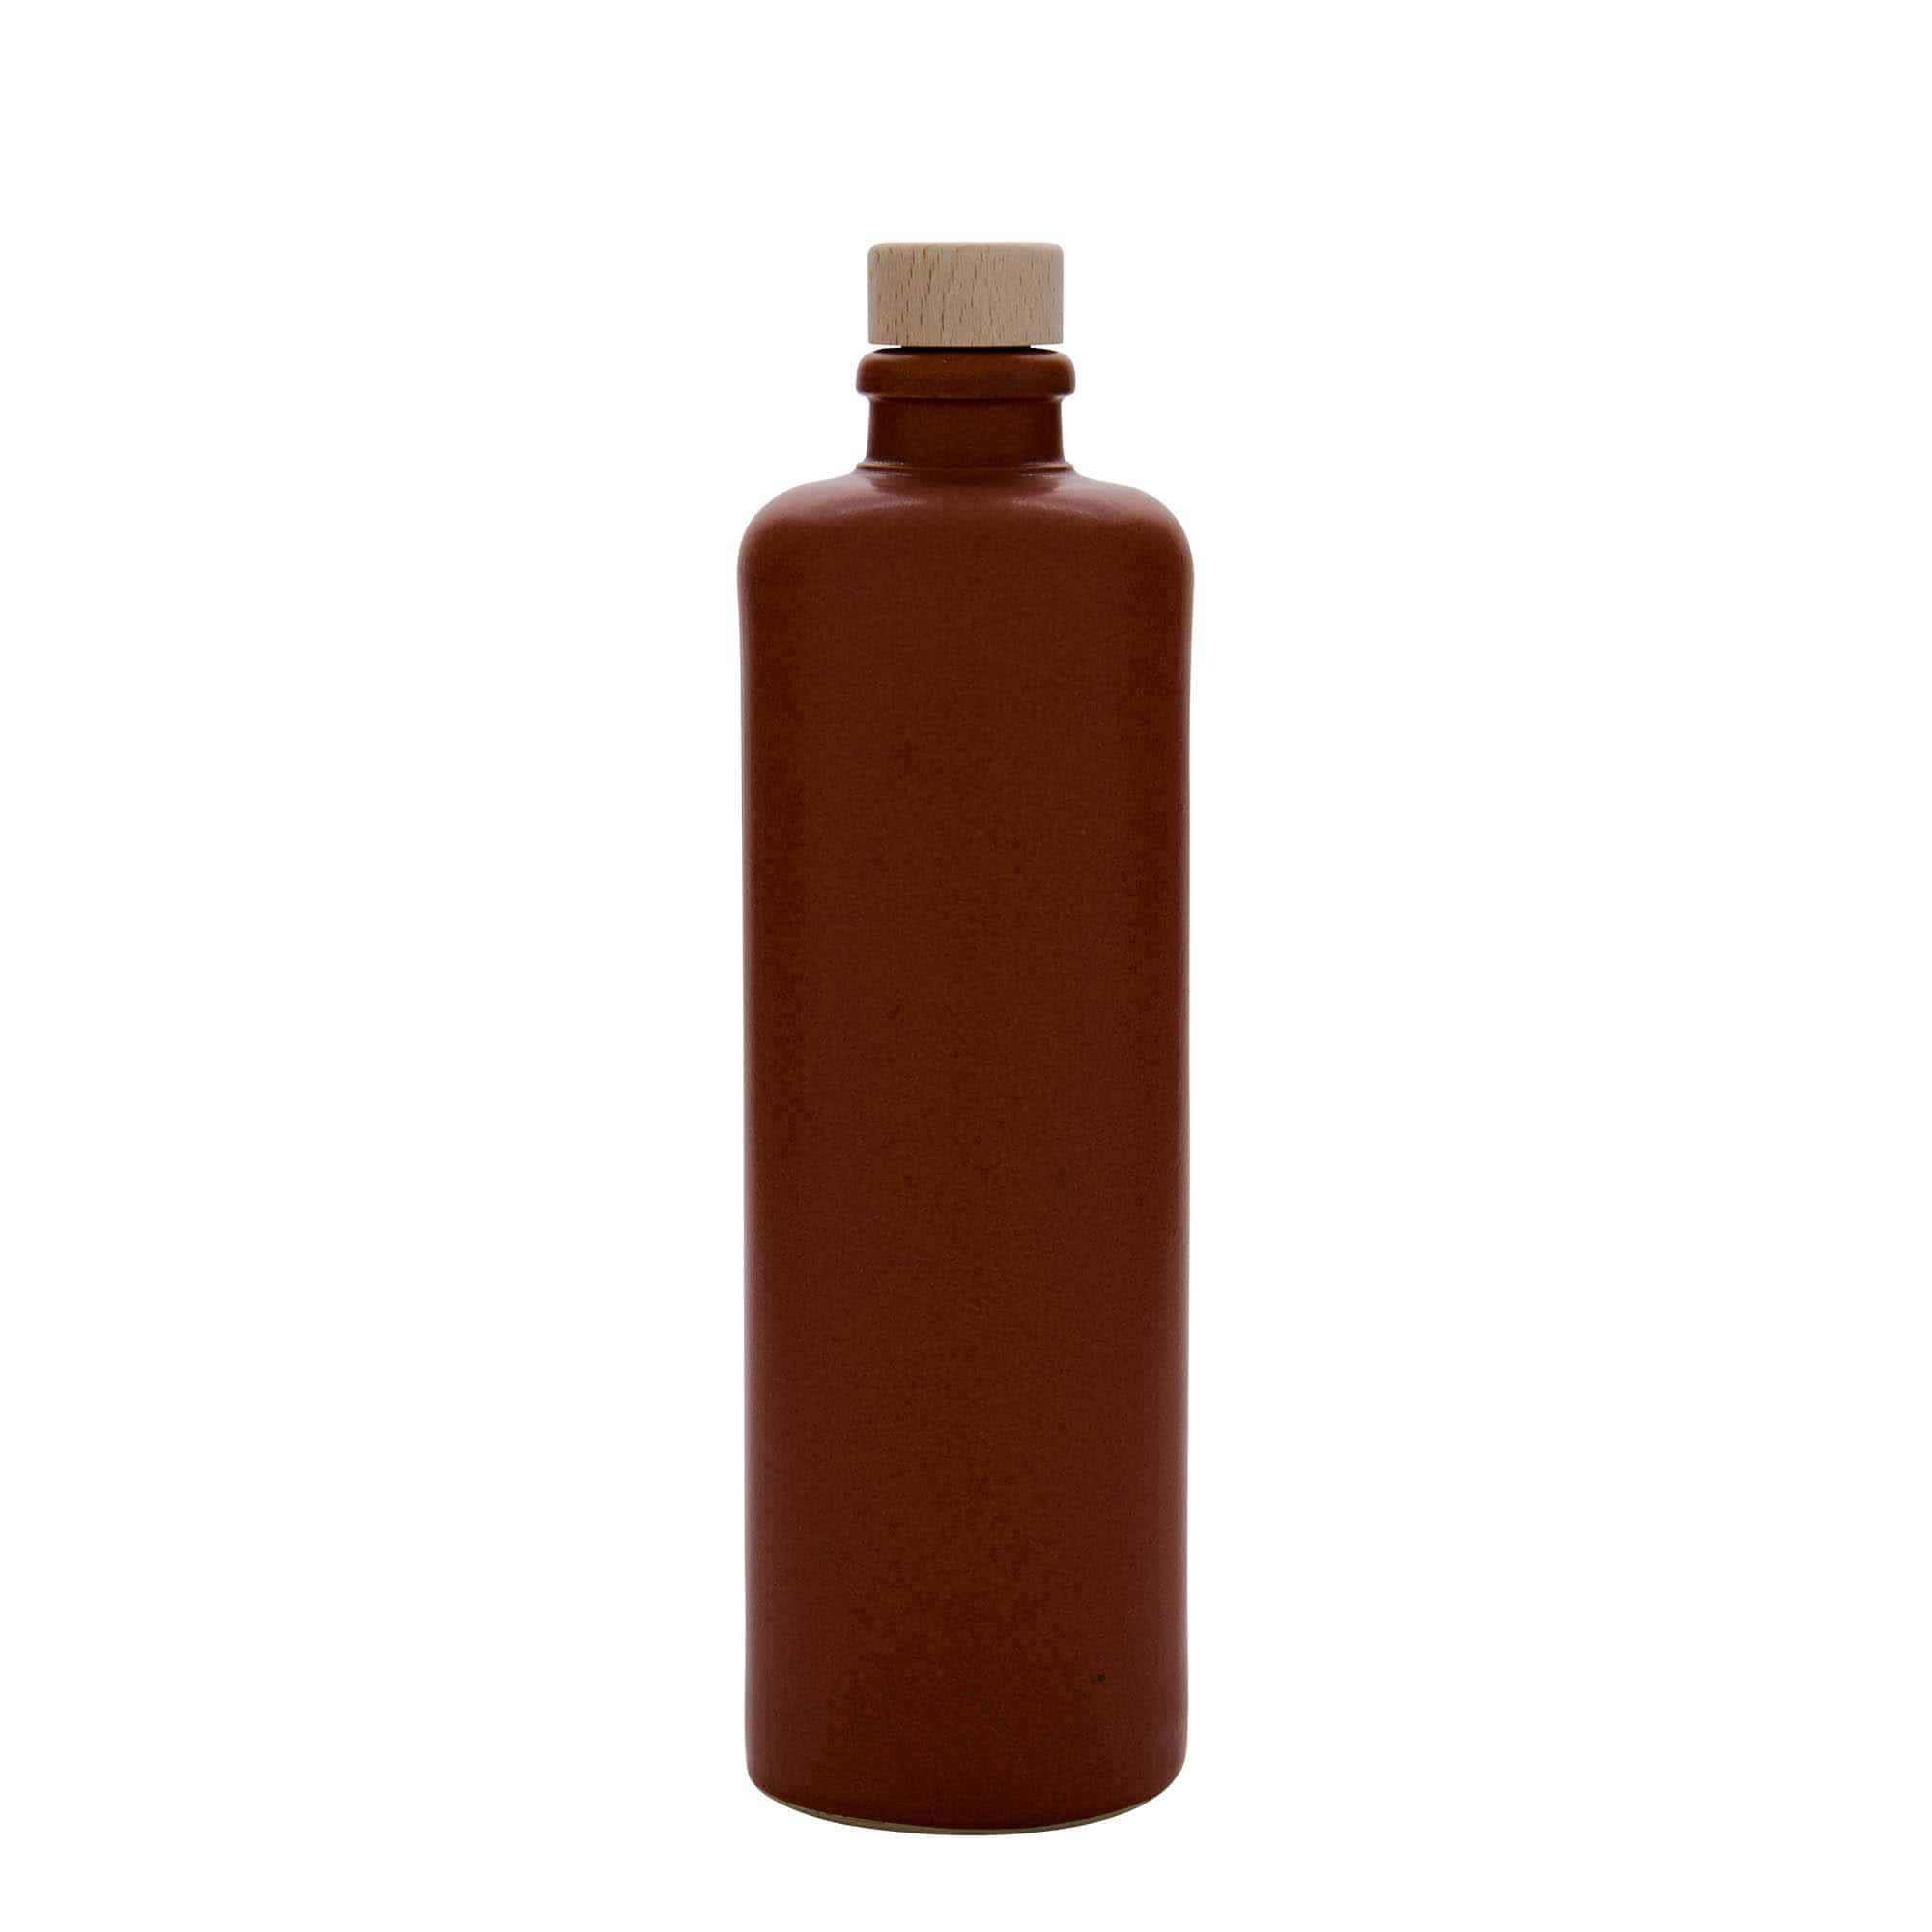 500 ml-es agyagkorsó, kőagyag, piros-barna, szájnyílás: parafadugó